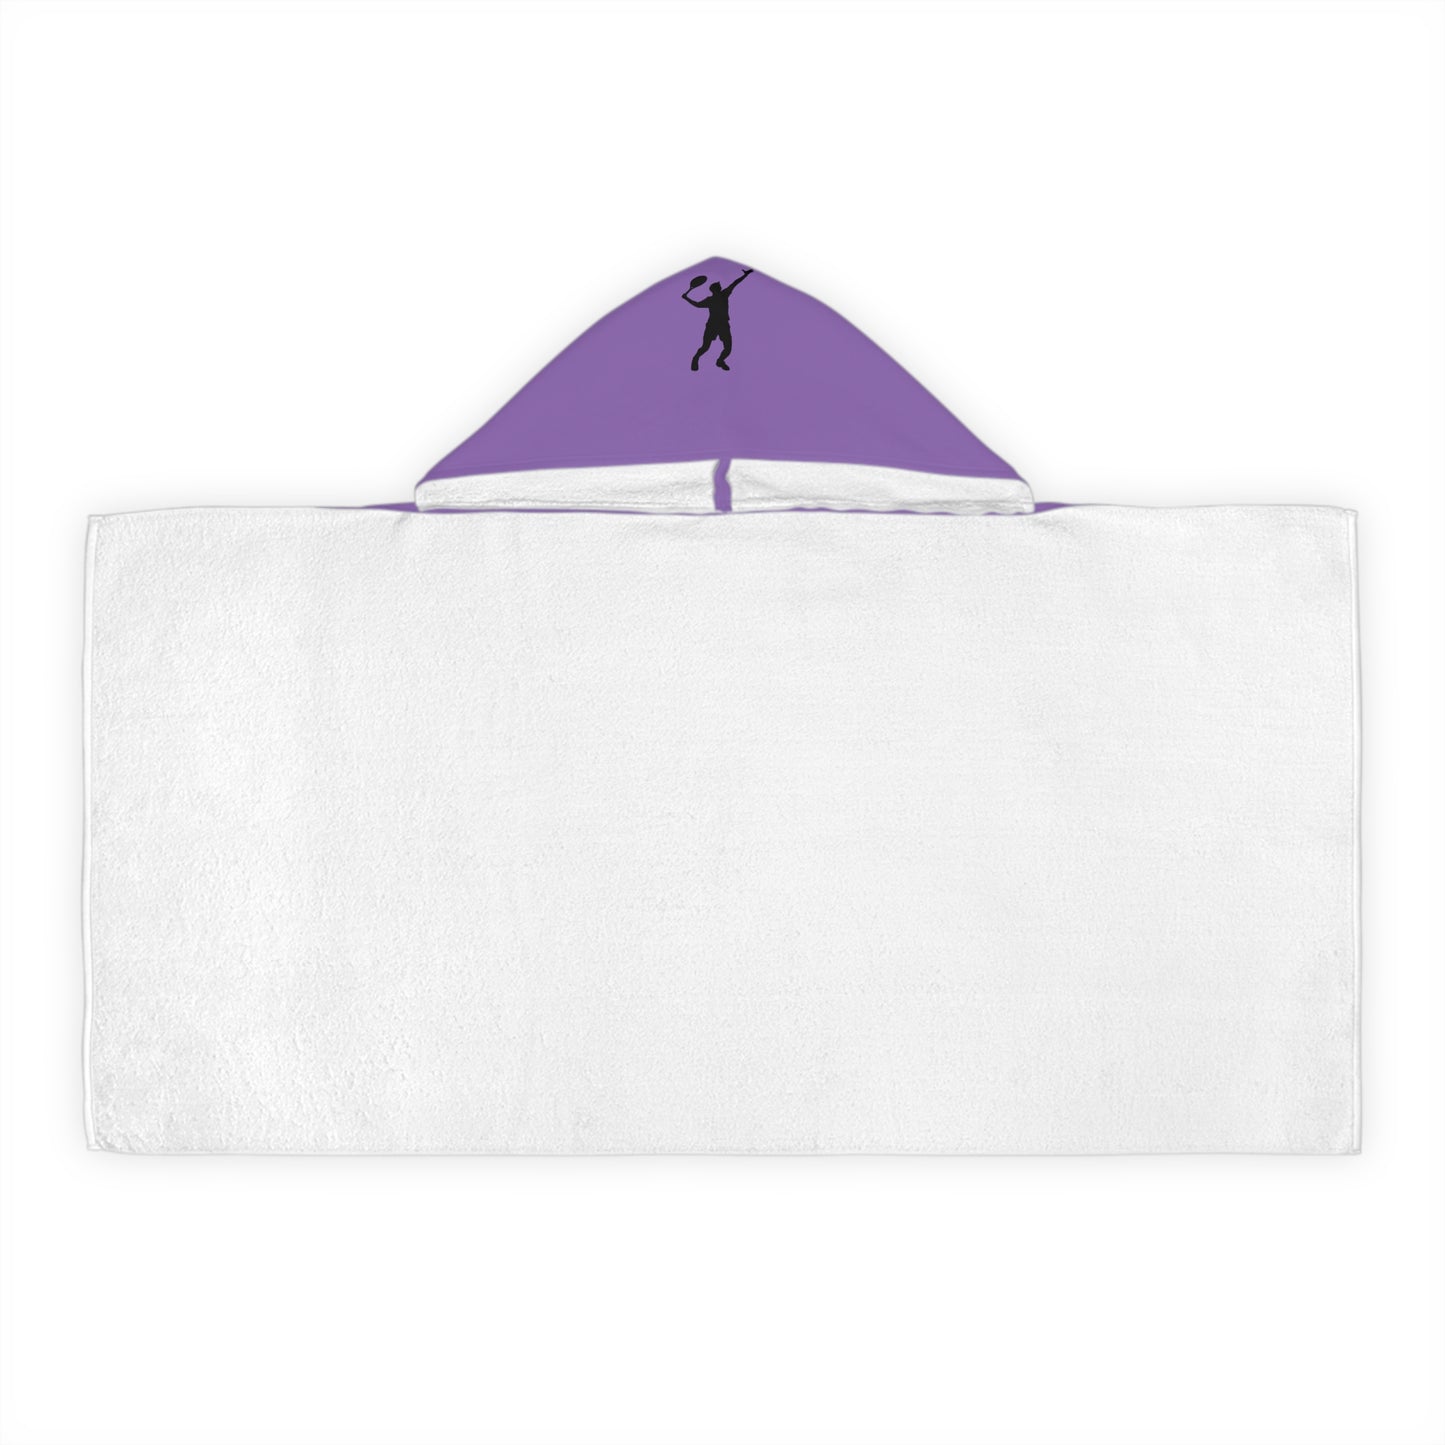 Youth Hooded Towel: Tennis Lite Purple